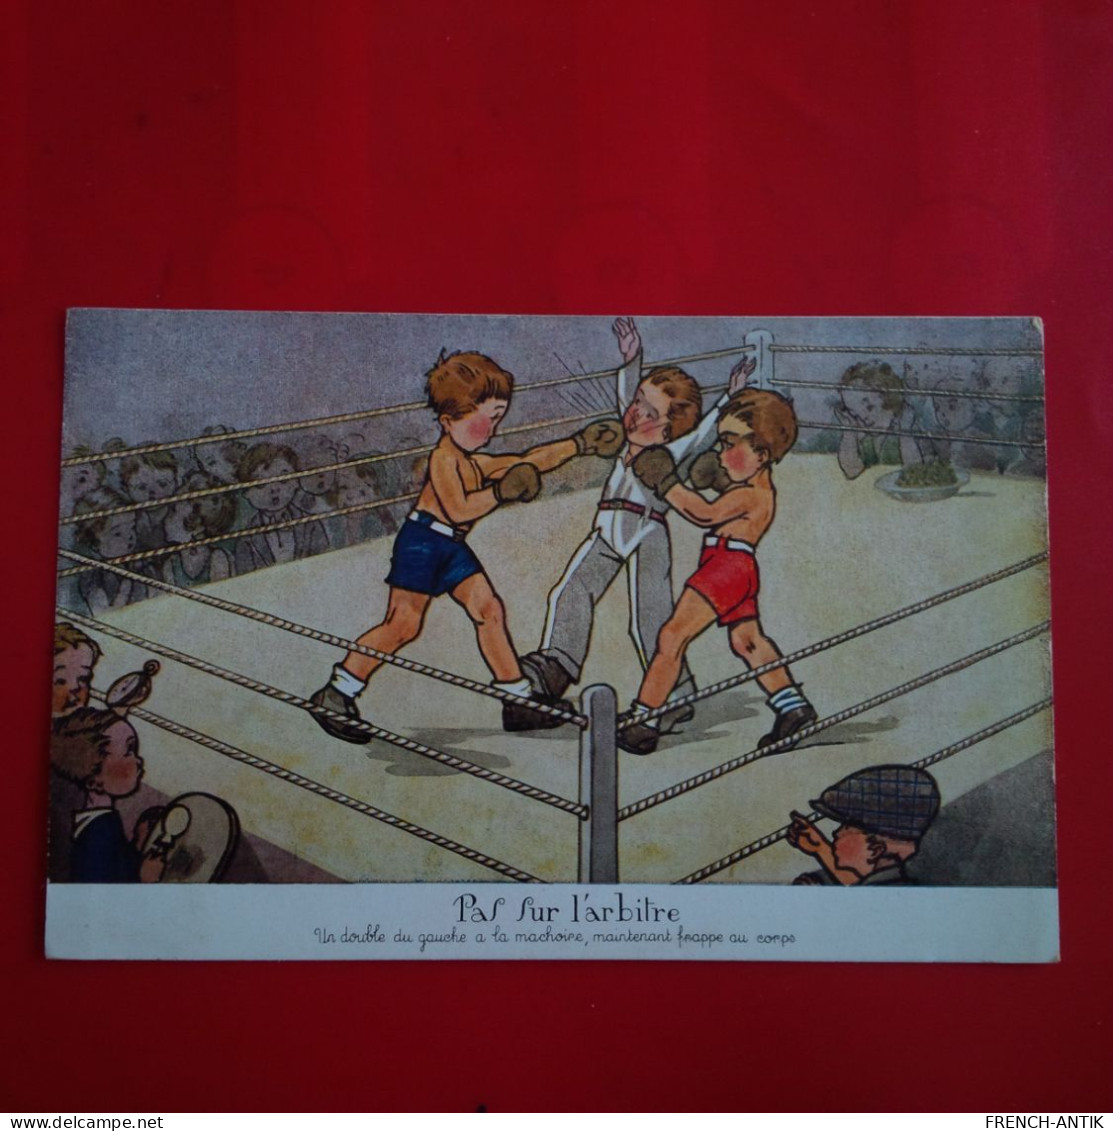 BOXE PAF SUR L ARBITRE - Boxing